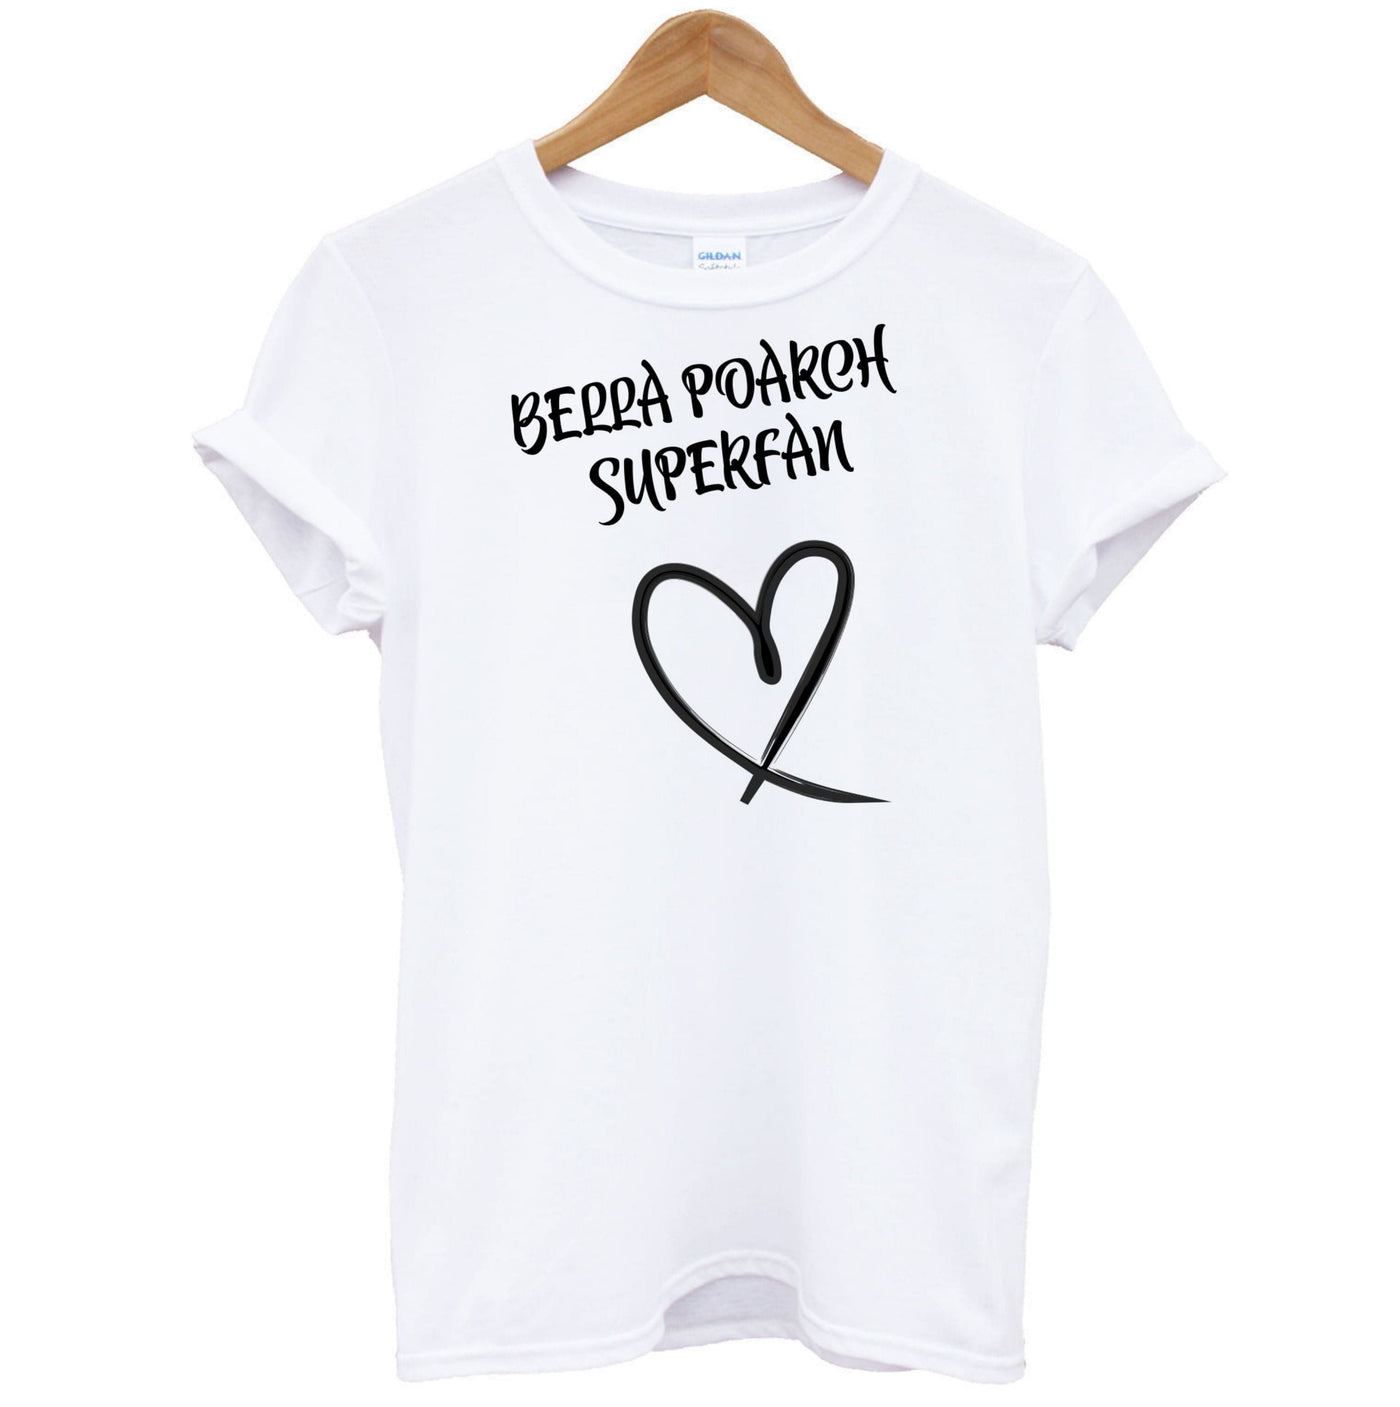 Bella Poarch Superfan T-Shirt